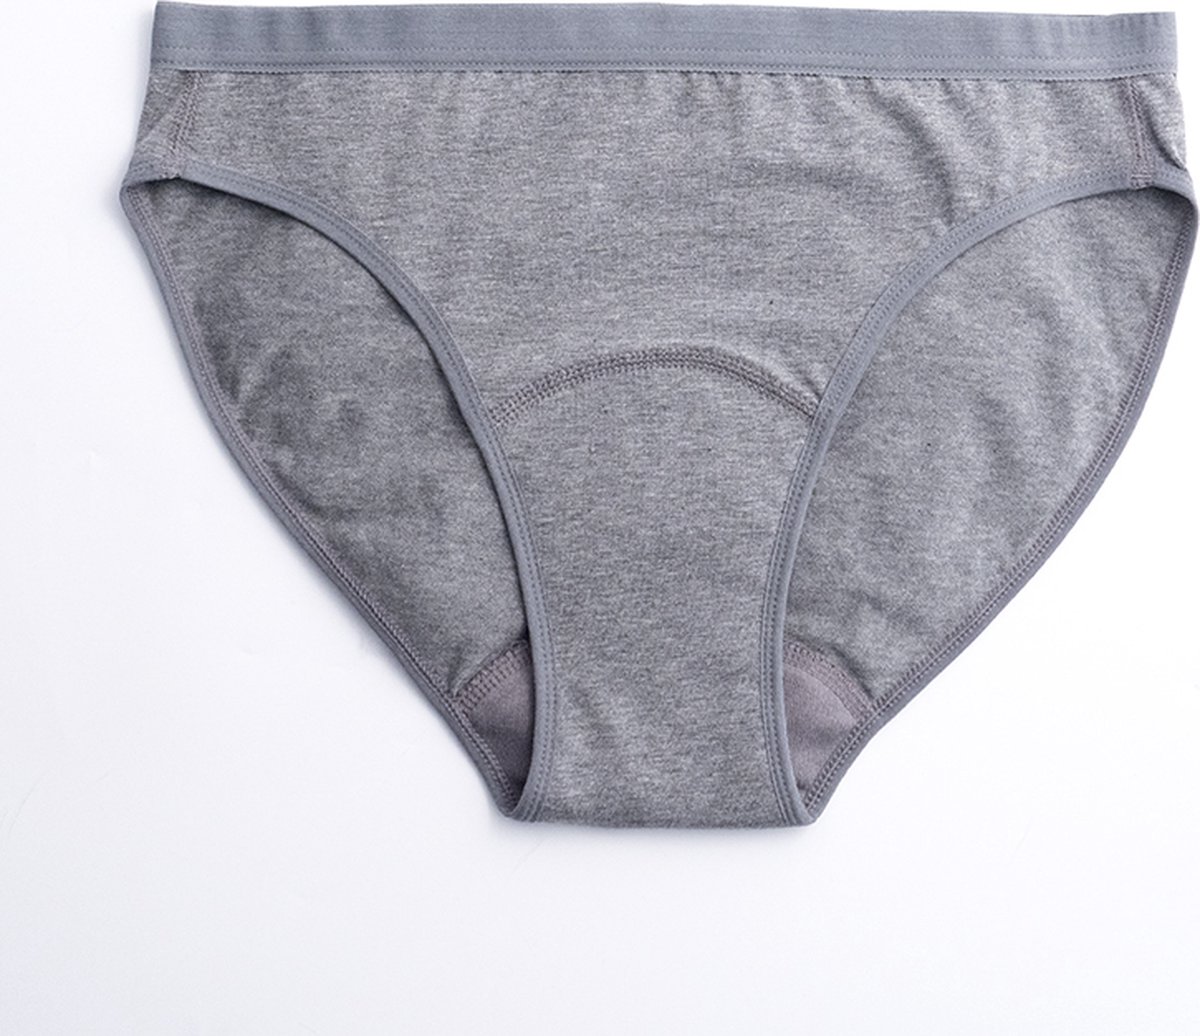 ImseVimse - Imse - menstruatieondergoed - Bikini model period underwear - lichte menstruatie - S - eur 36/38 - grijs